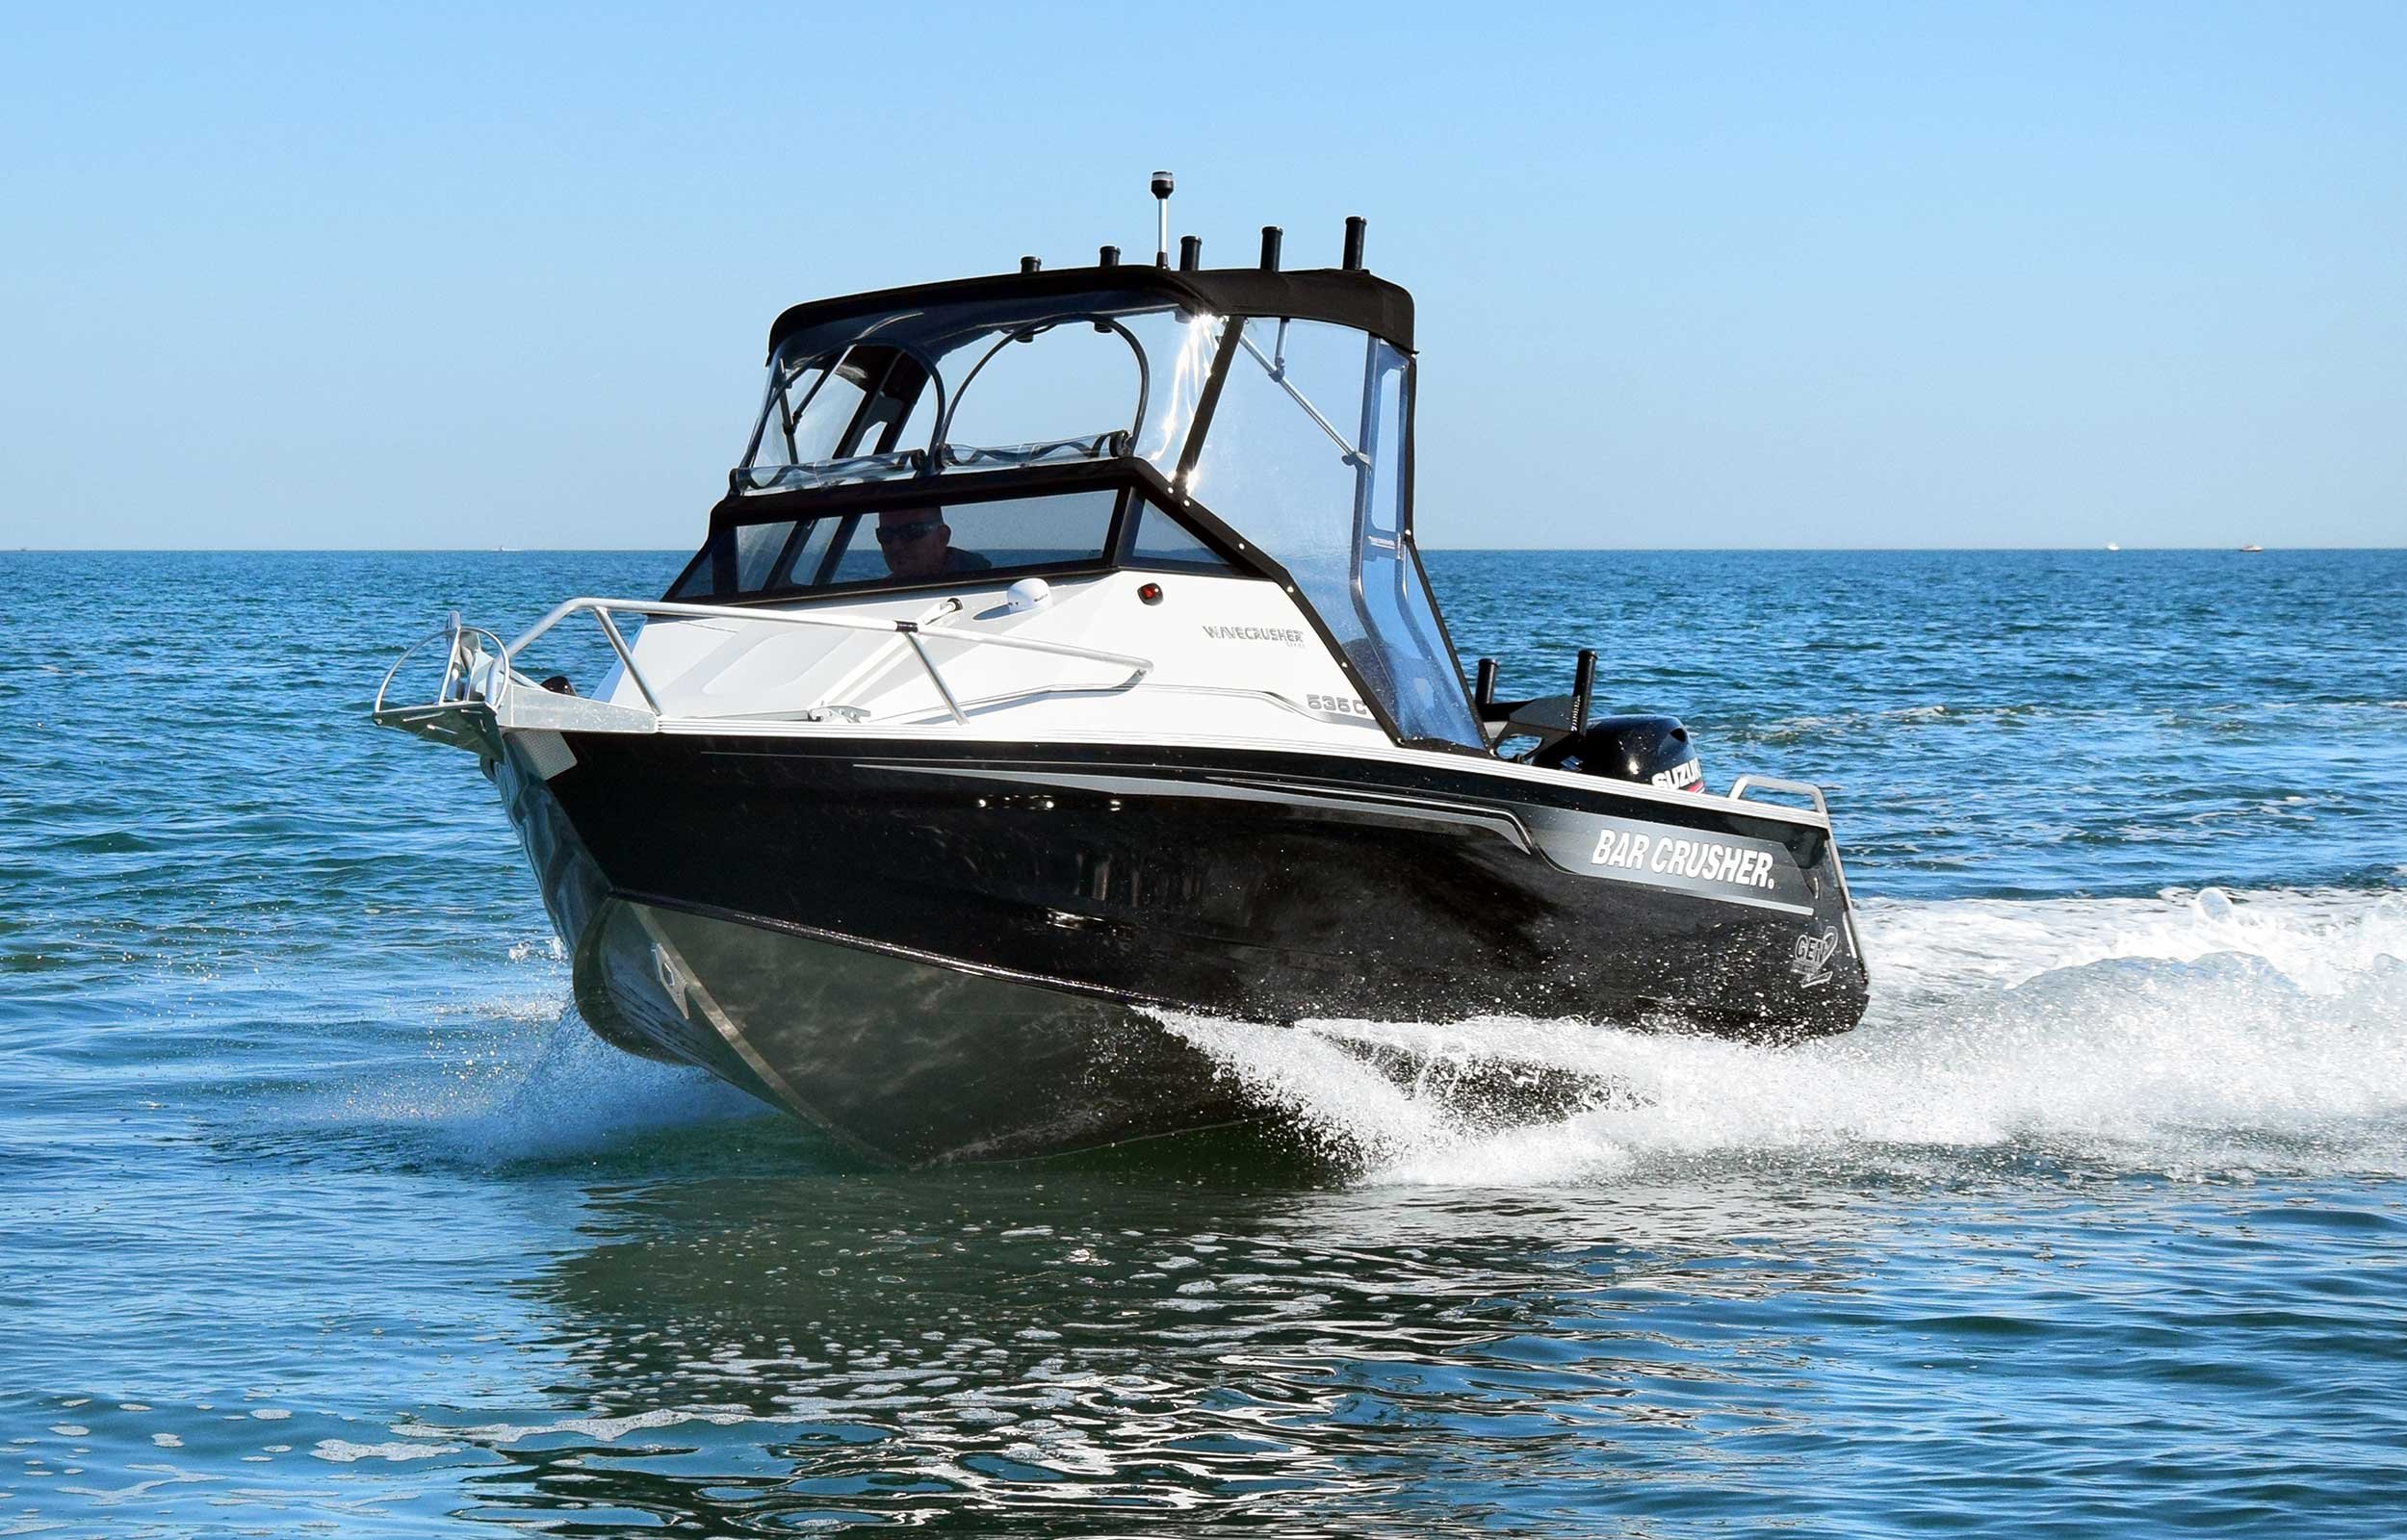 models-bar-crusher-535c-gen2-plate-aluminium-fishing-boat-web-6